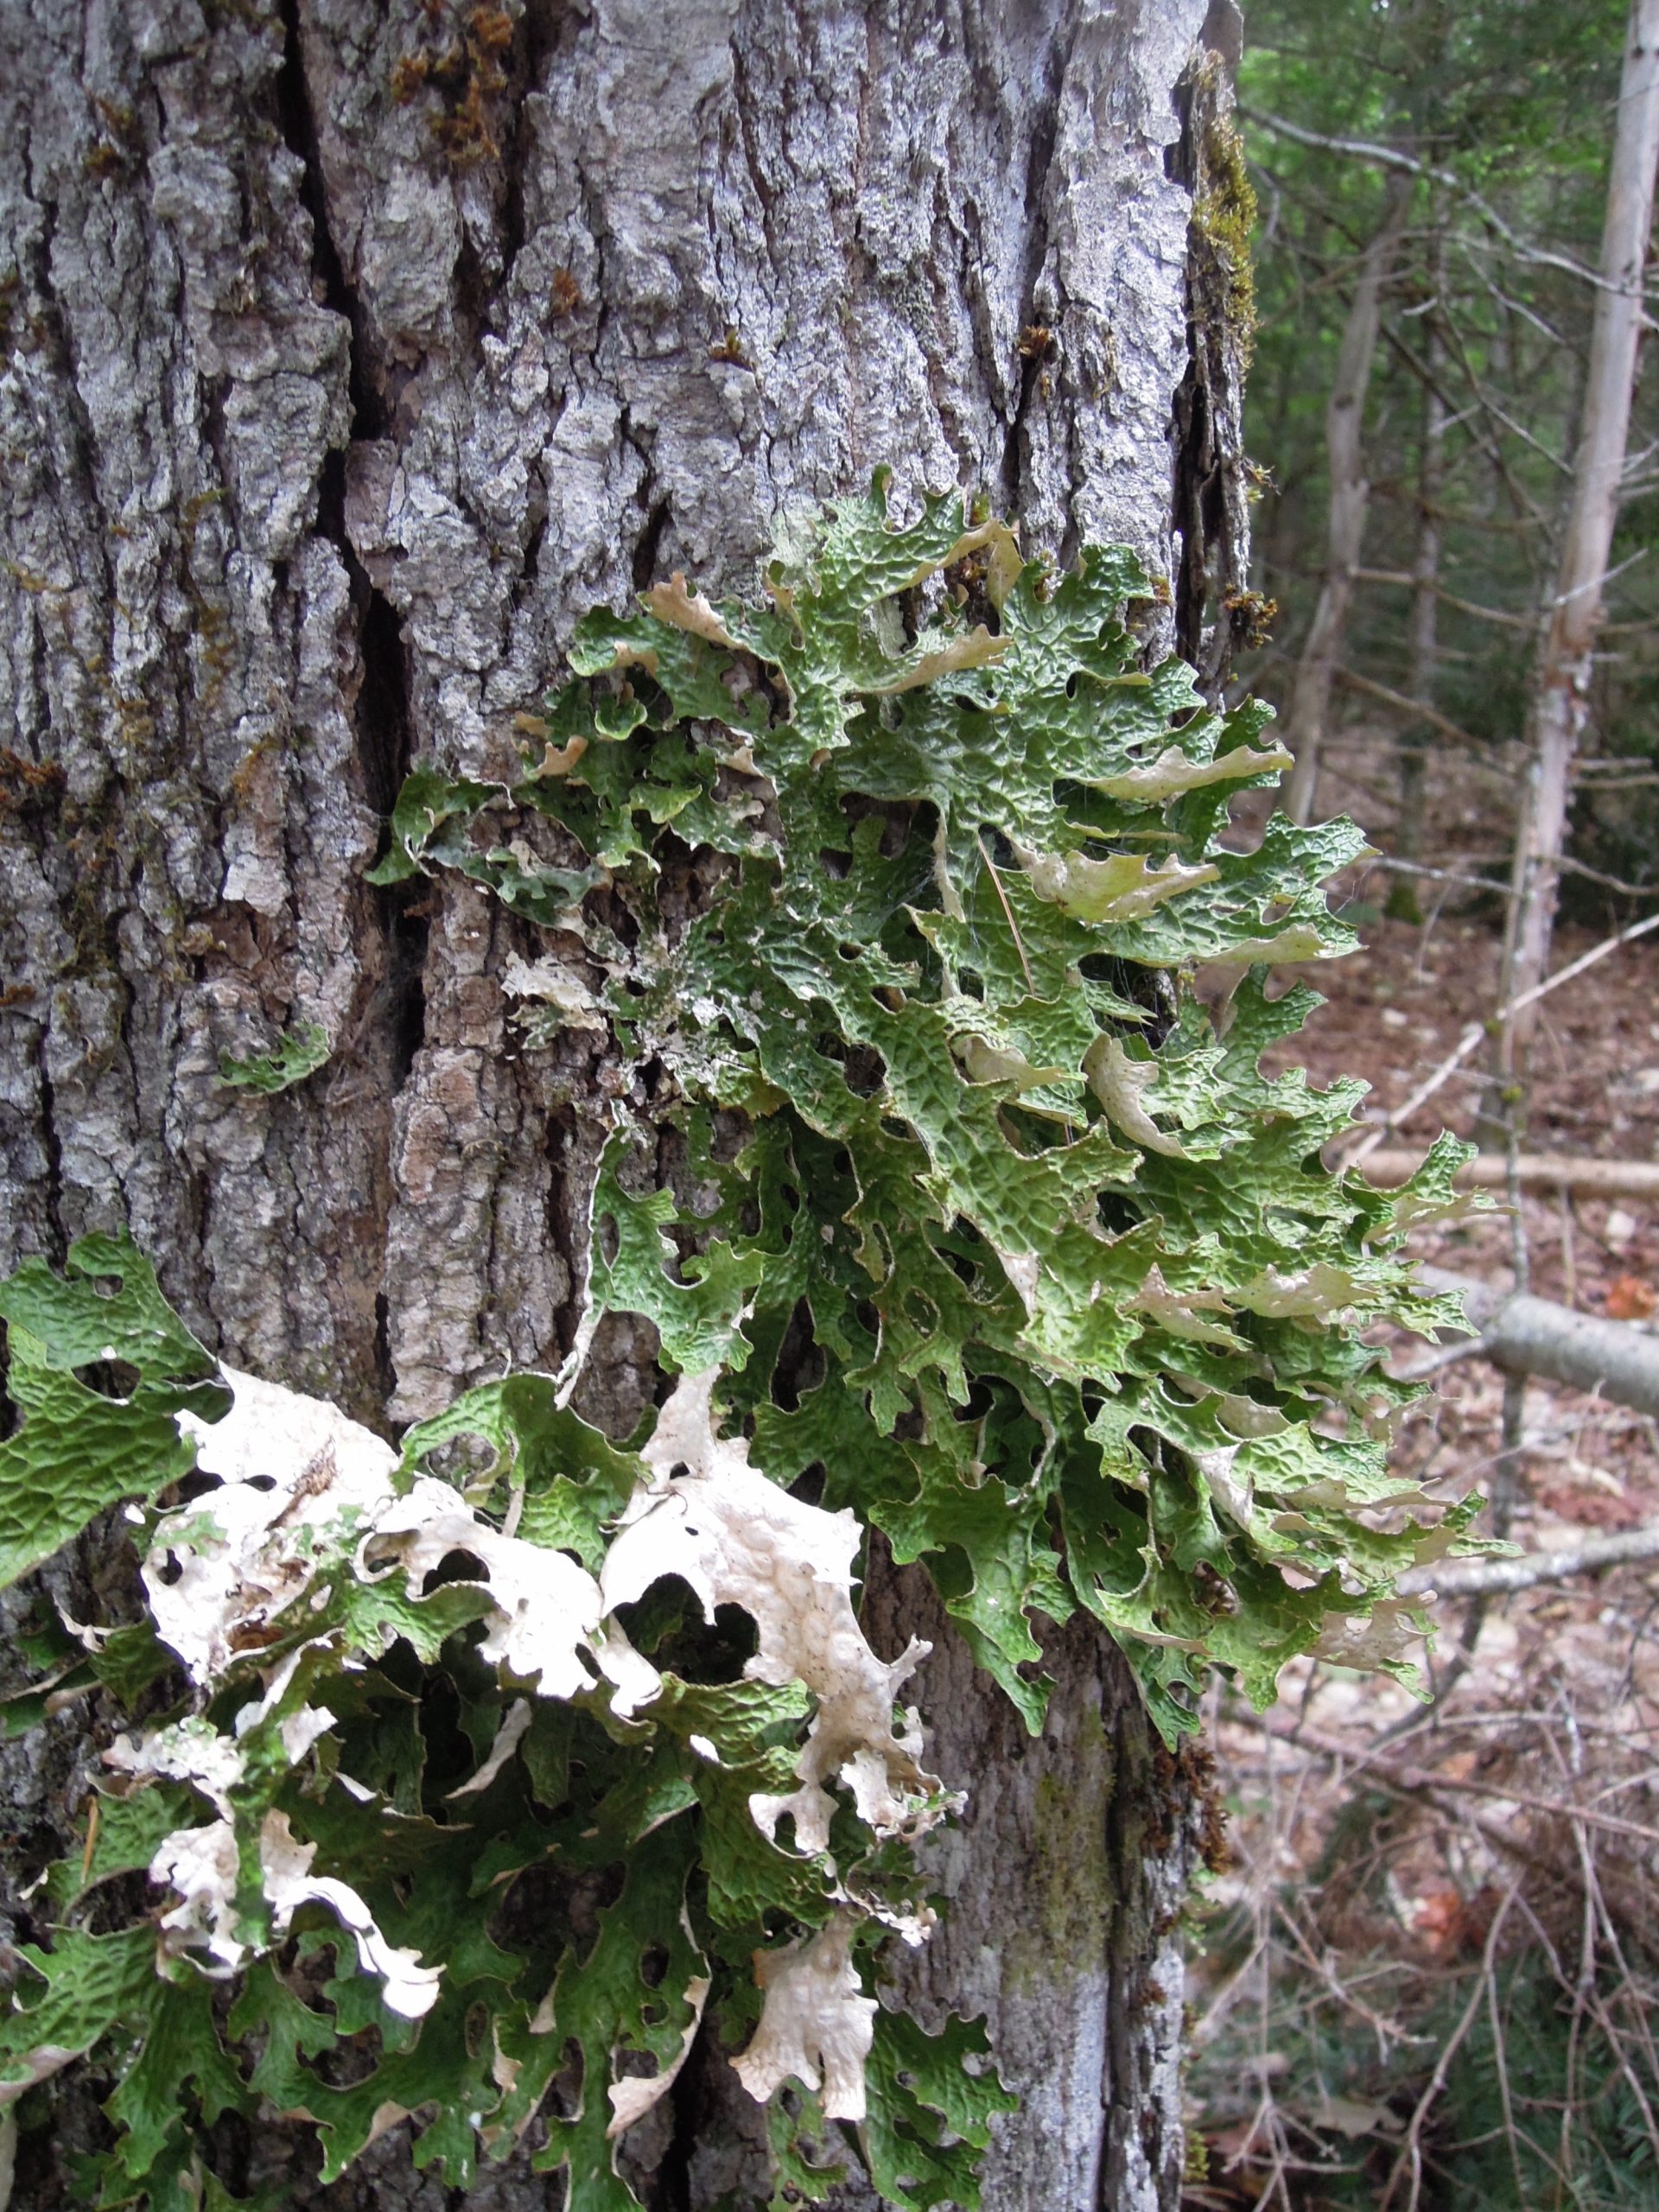 La corteza de un árbol con crecimiento de liquen verde lungwort, que parece un racimo de hojas.